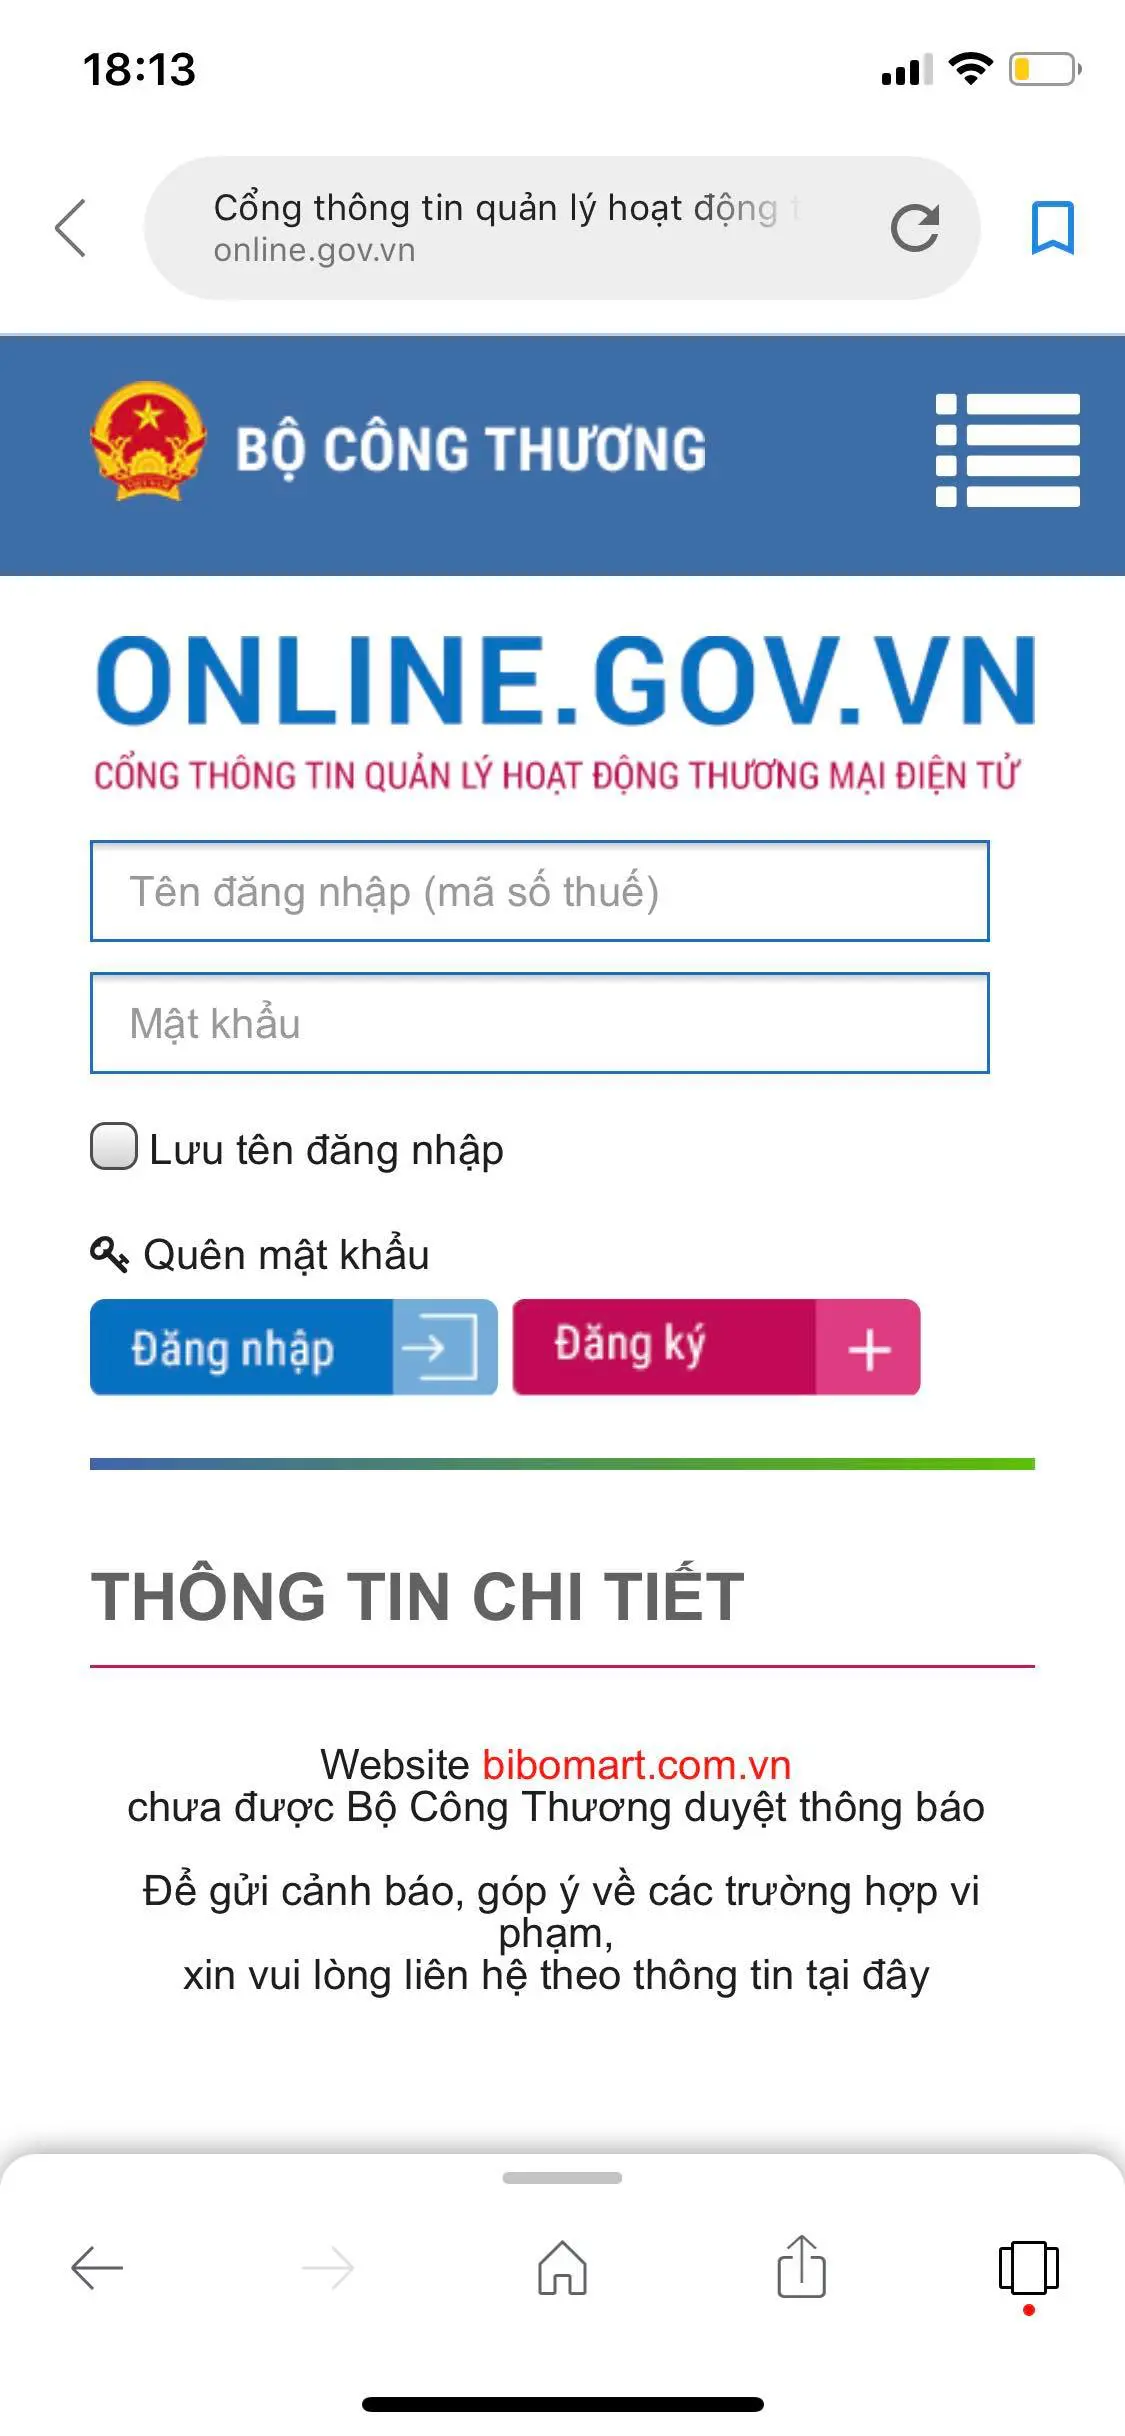 Cổng thông tin thương mại điện tử Bộ Công Thương cho biết website bibomart.com.vn chưa được Bộ Công Thương duyệt 